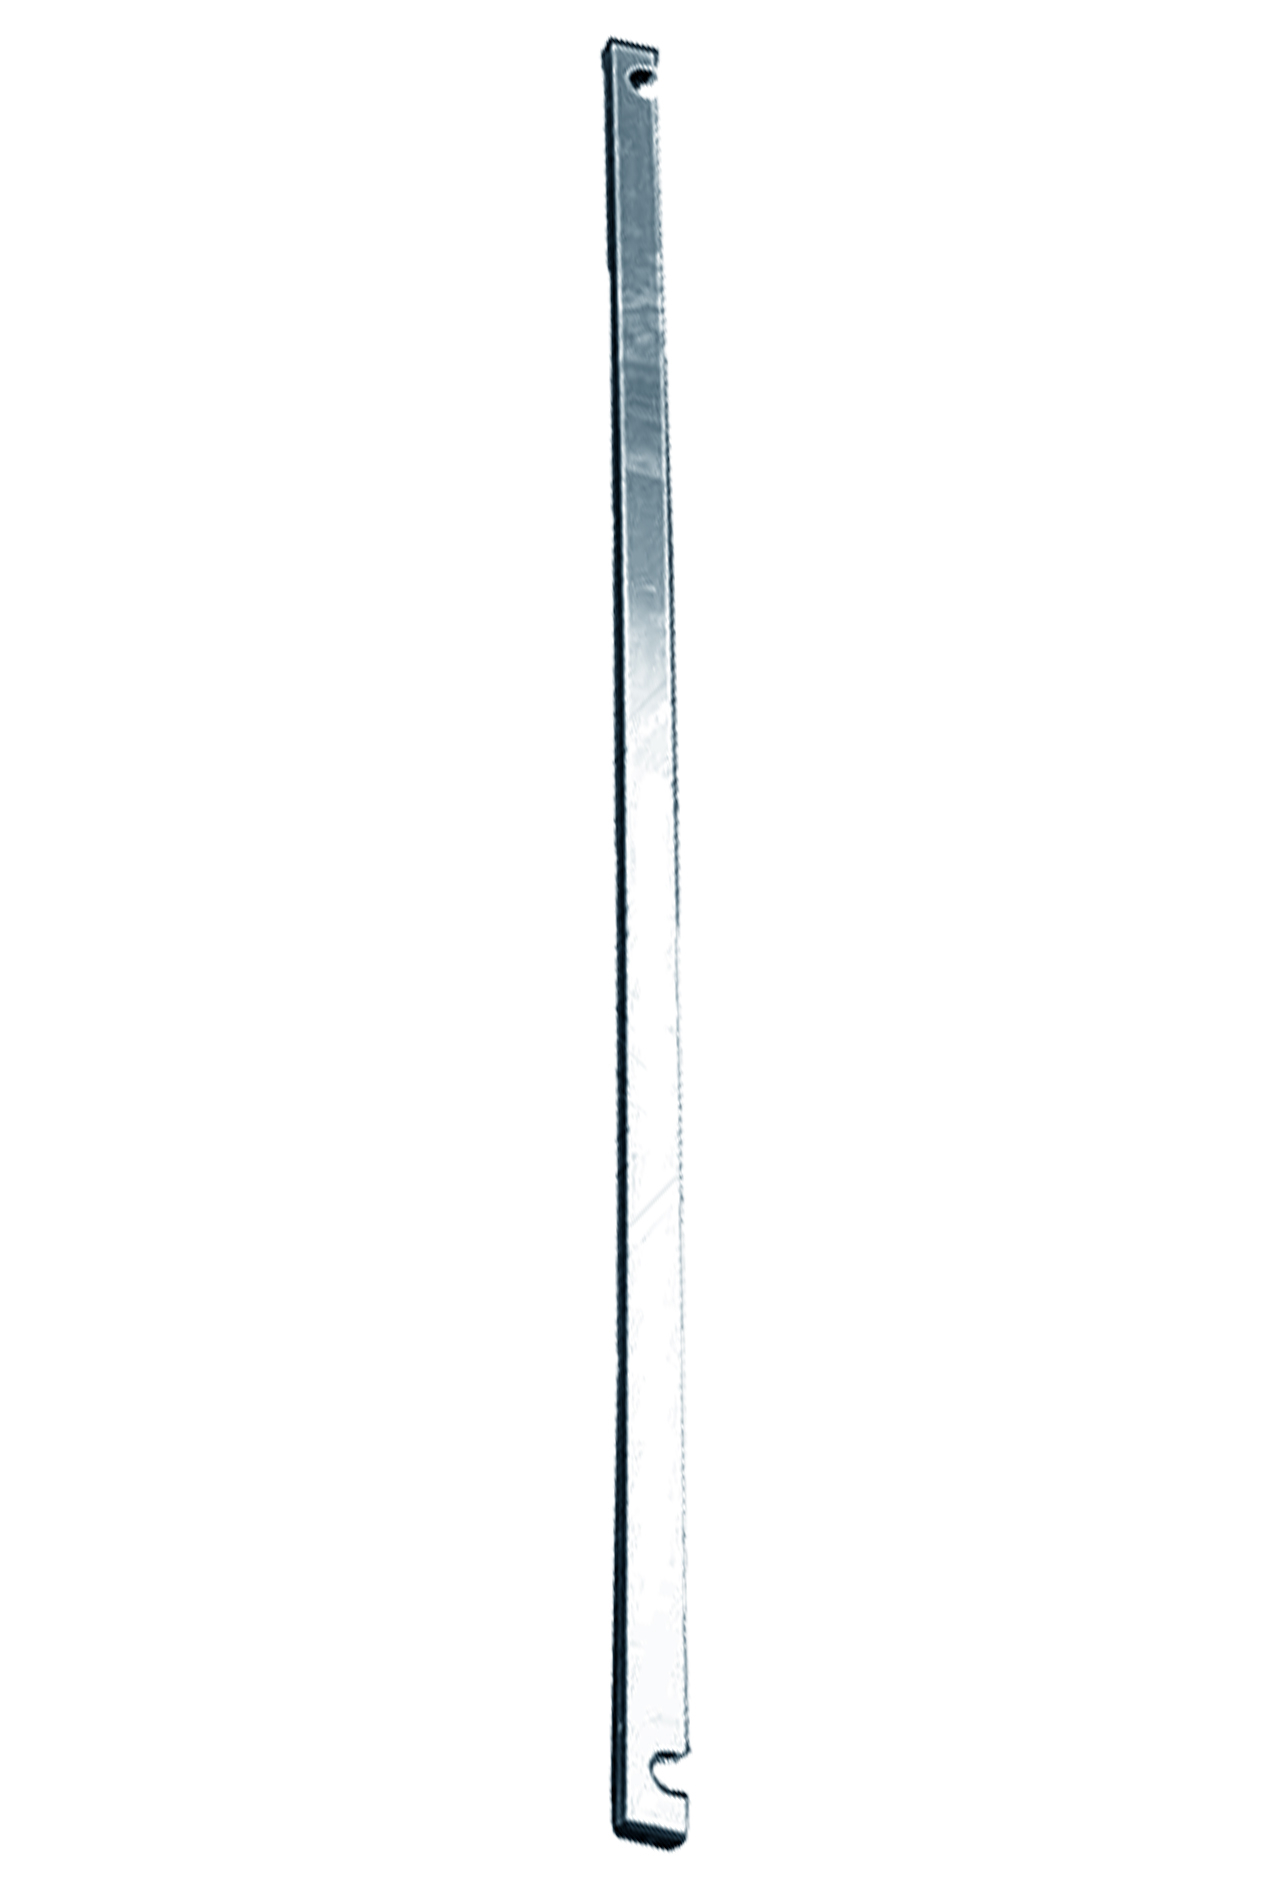 Дополнительное изображение STABILO 100-3 Передвижные подмости, рабочая высота 4,3 м, размер площадки (3.0x0.75 м)